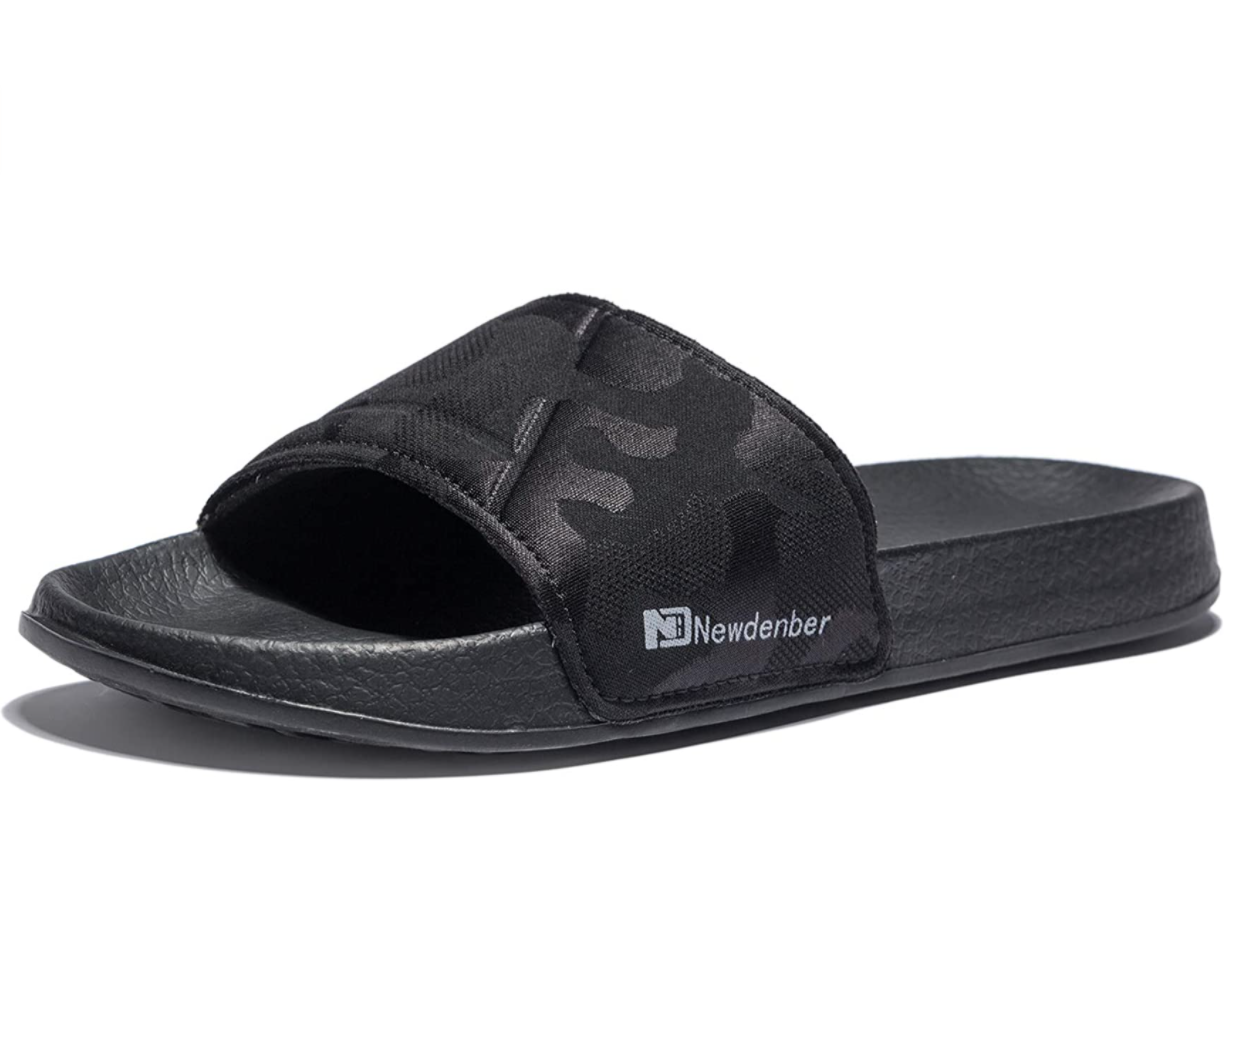 NewDenBer Adjustable Strap Cushioned Men’s Slide Sandals